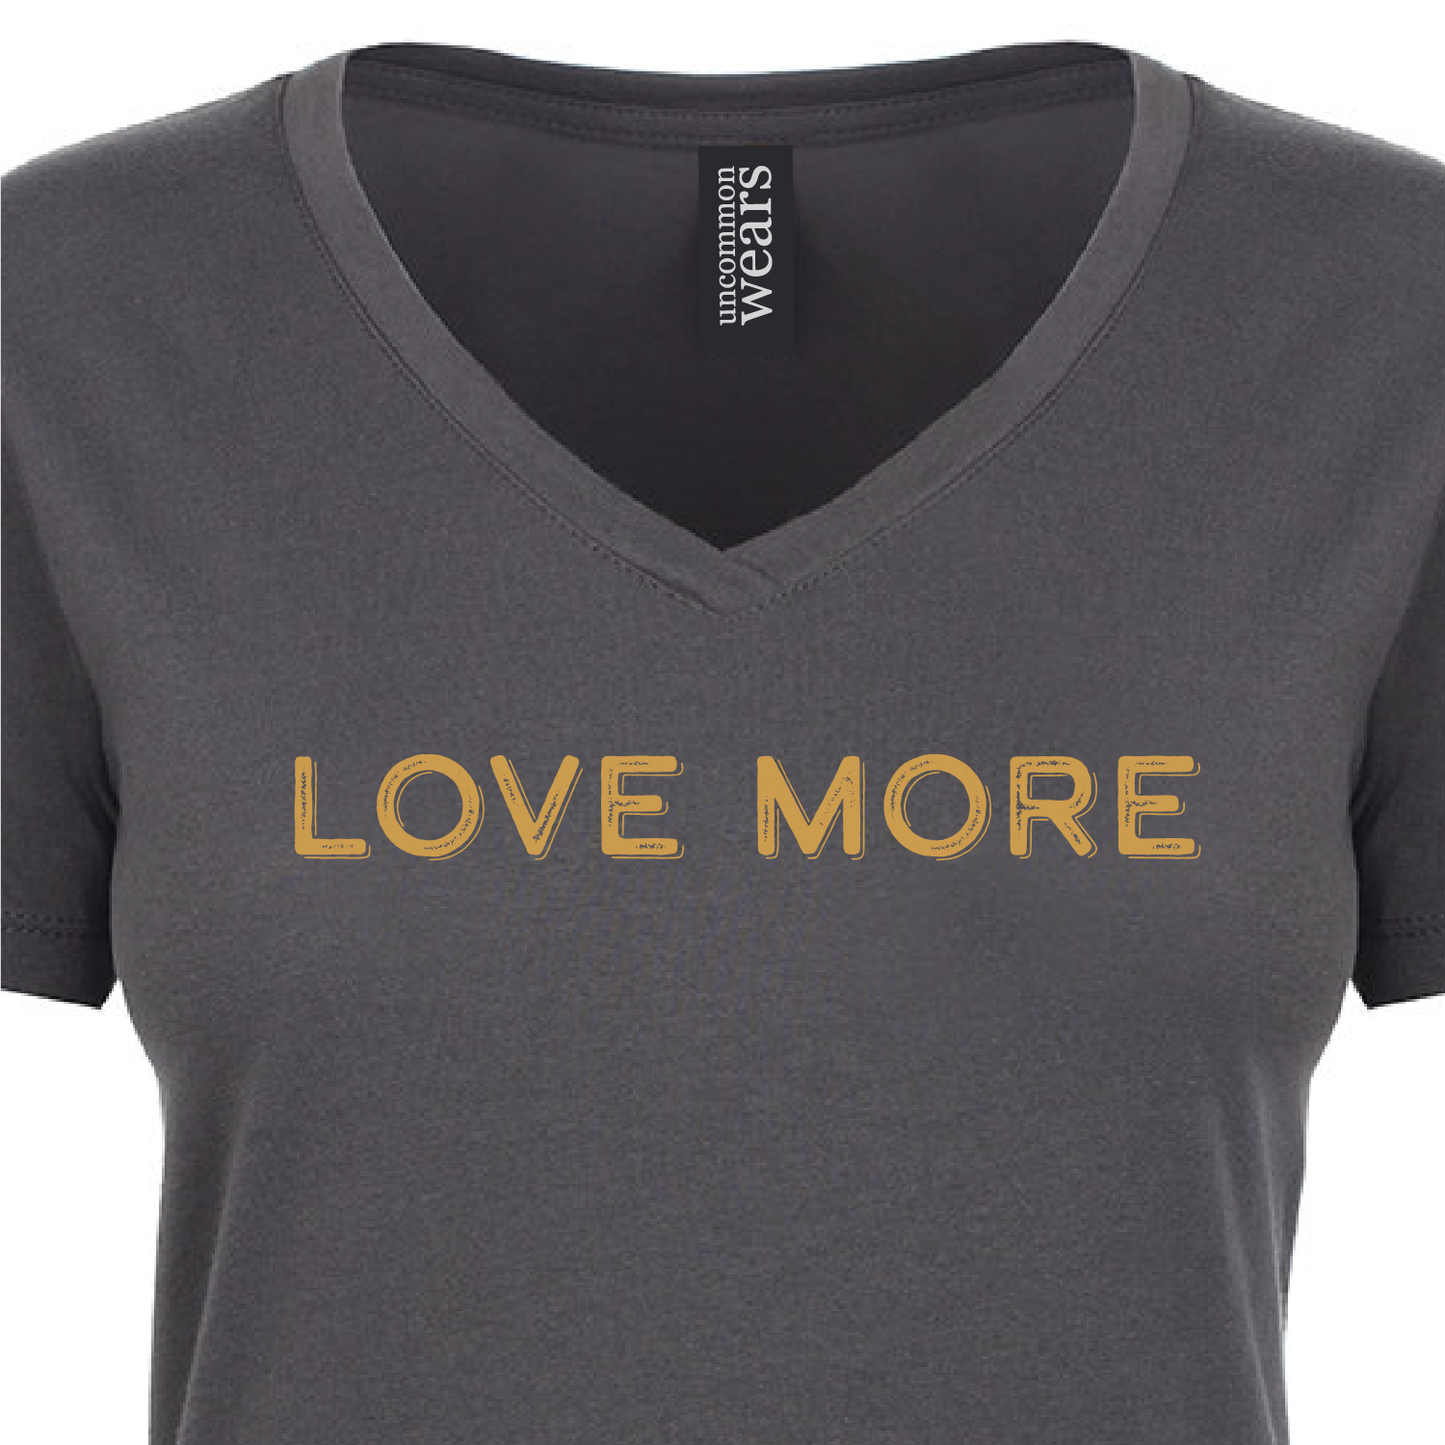 Love More Dark Gray T-Shirt - 086